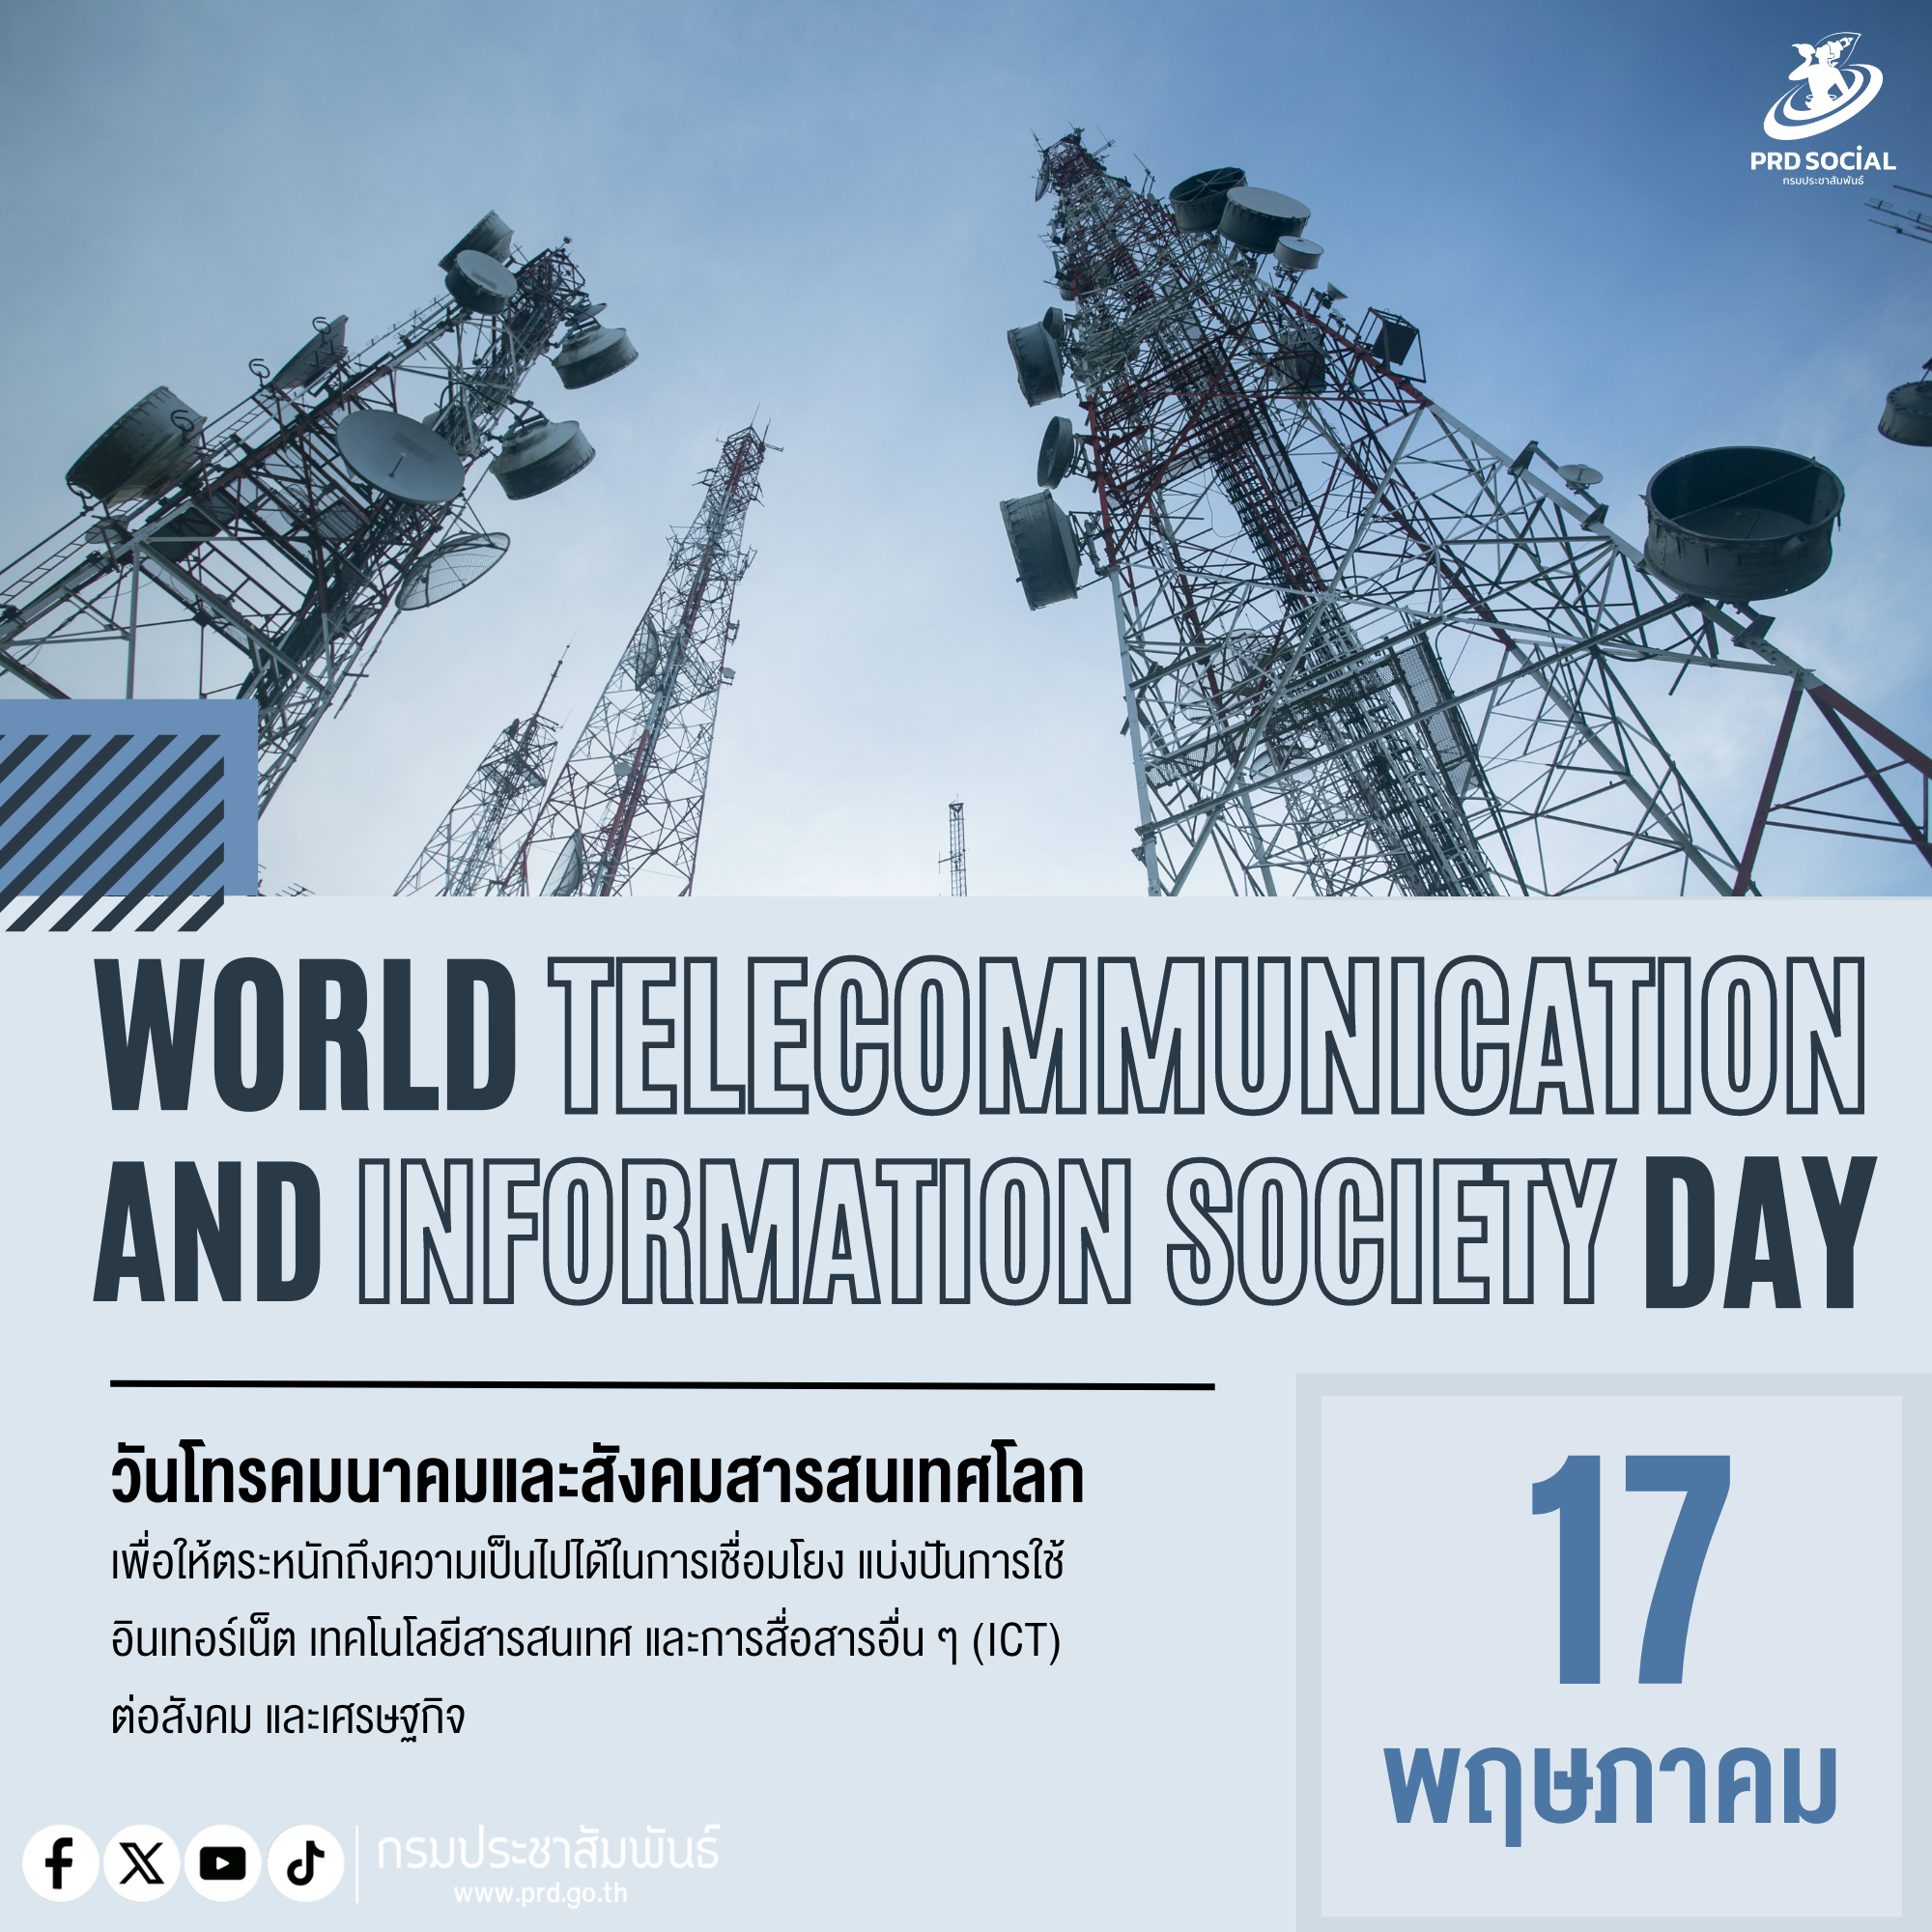 วันที่ 17 พฤษภาคม ของทุกปี เป็นวันโทรคมนาคมและสังคมสารสนเทศโลก (World Telecommunication and Information Society Day)